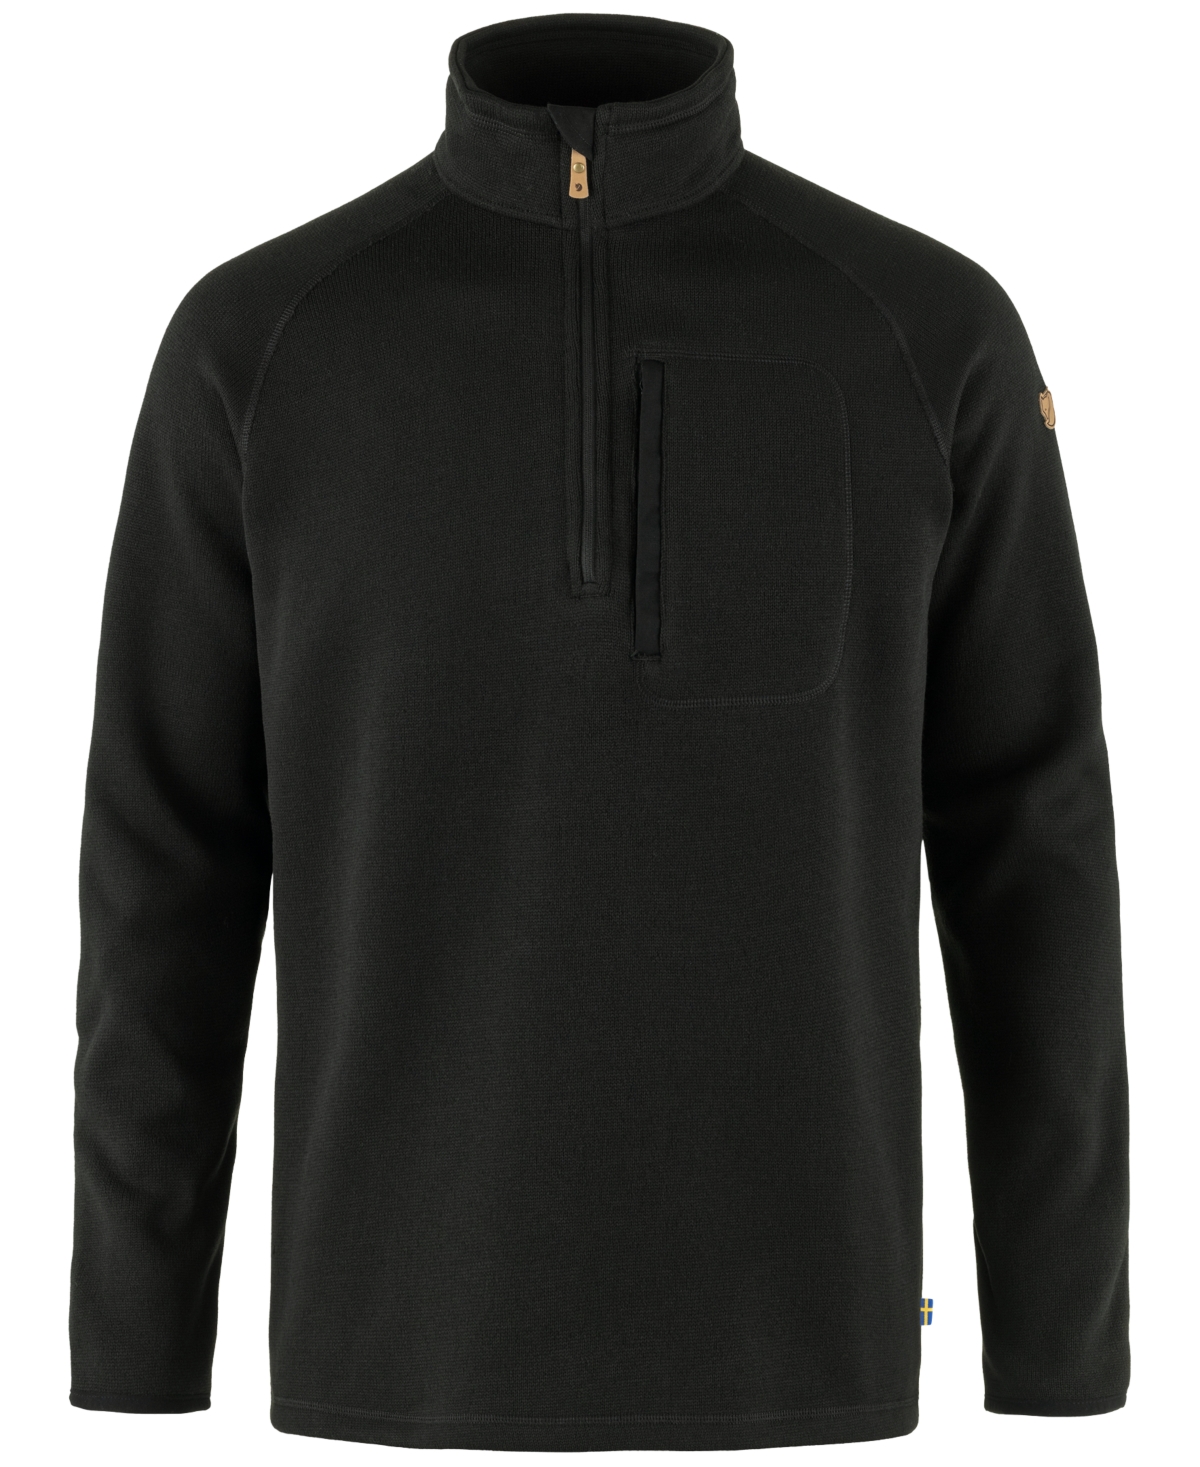 Men's Ovik Half-Zip Fleece Jacket - Black